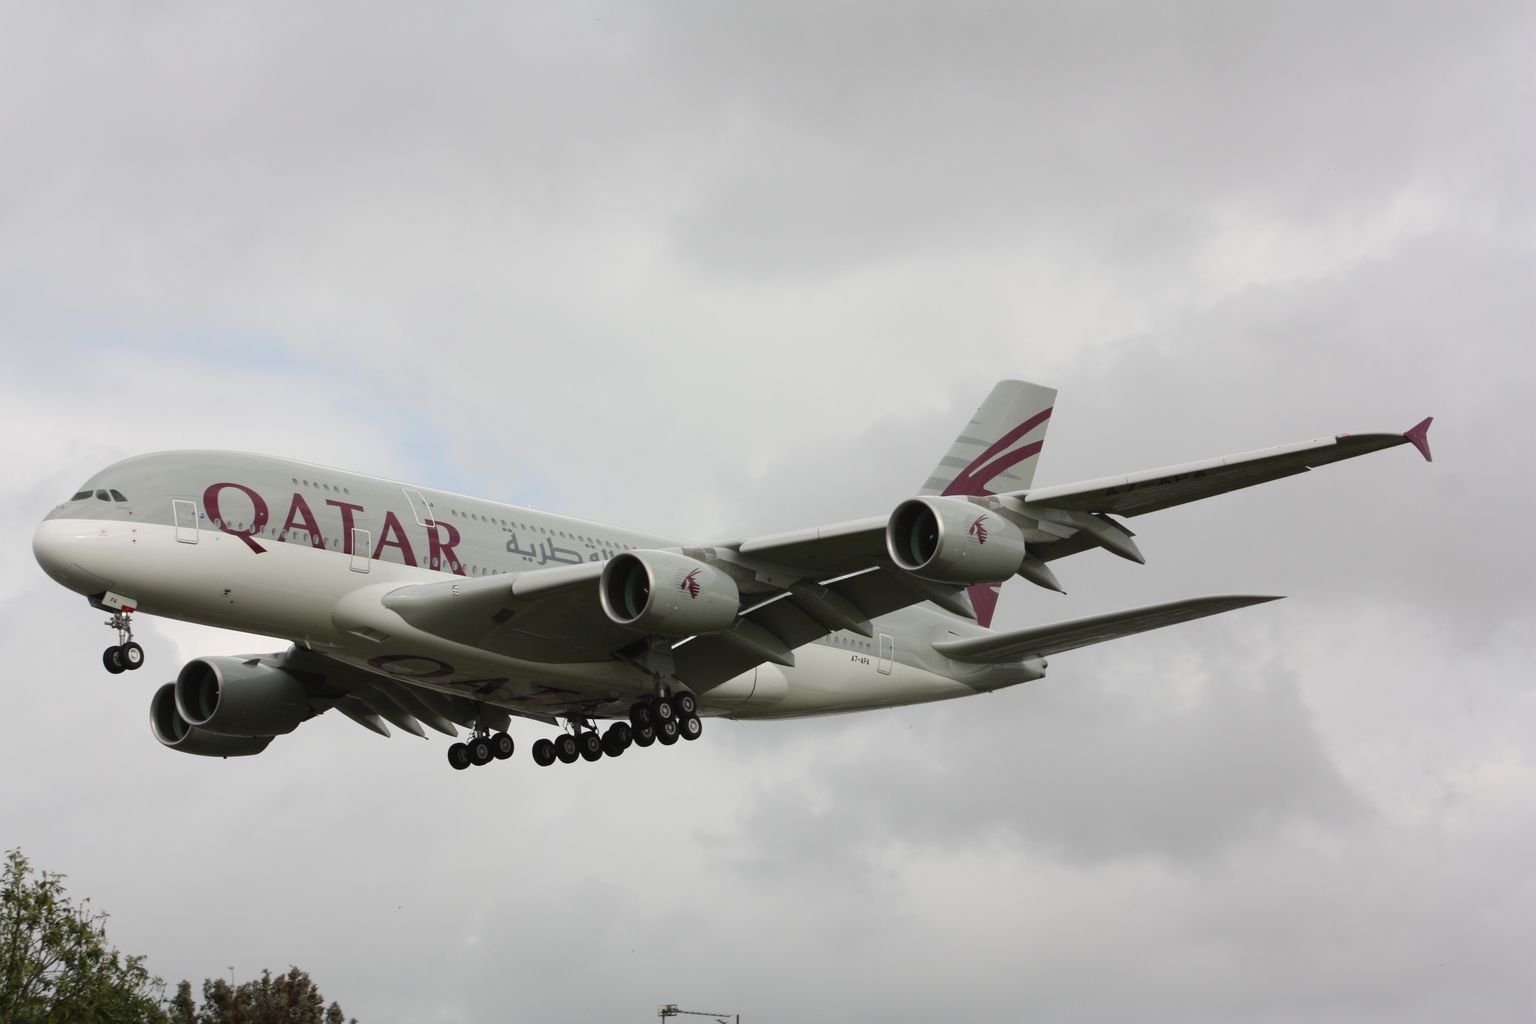 Tillukese maa kohta on Qatar Airways väga suur lennufirma. Muuhulgas lennatakse ka kümne Airbus 380 lennukiga (pildil).